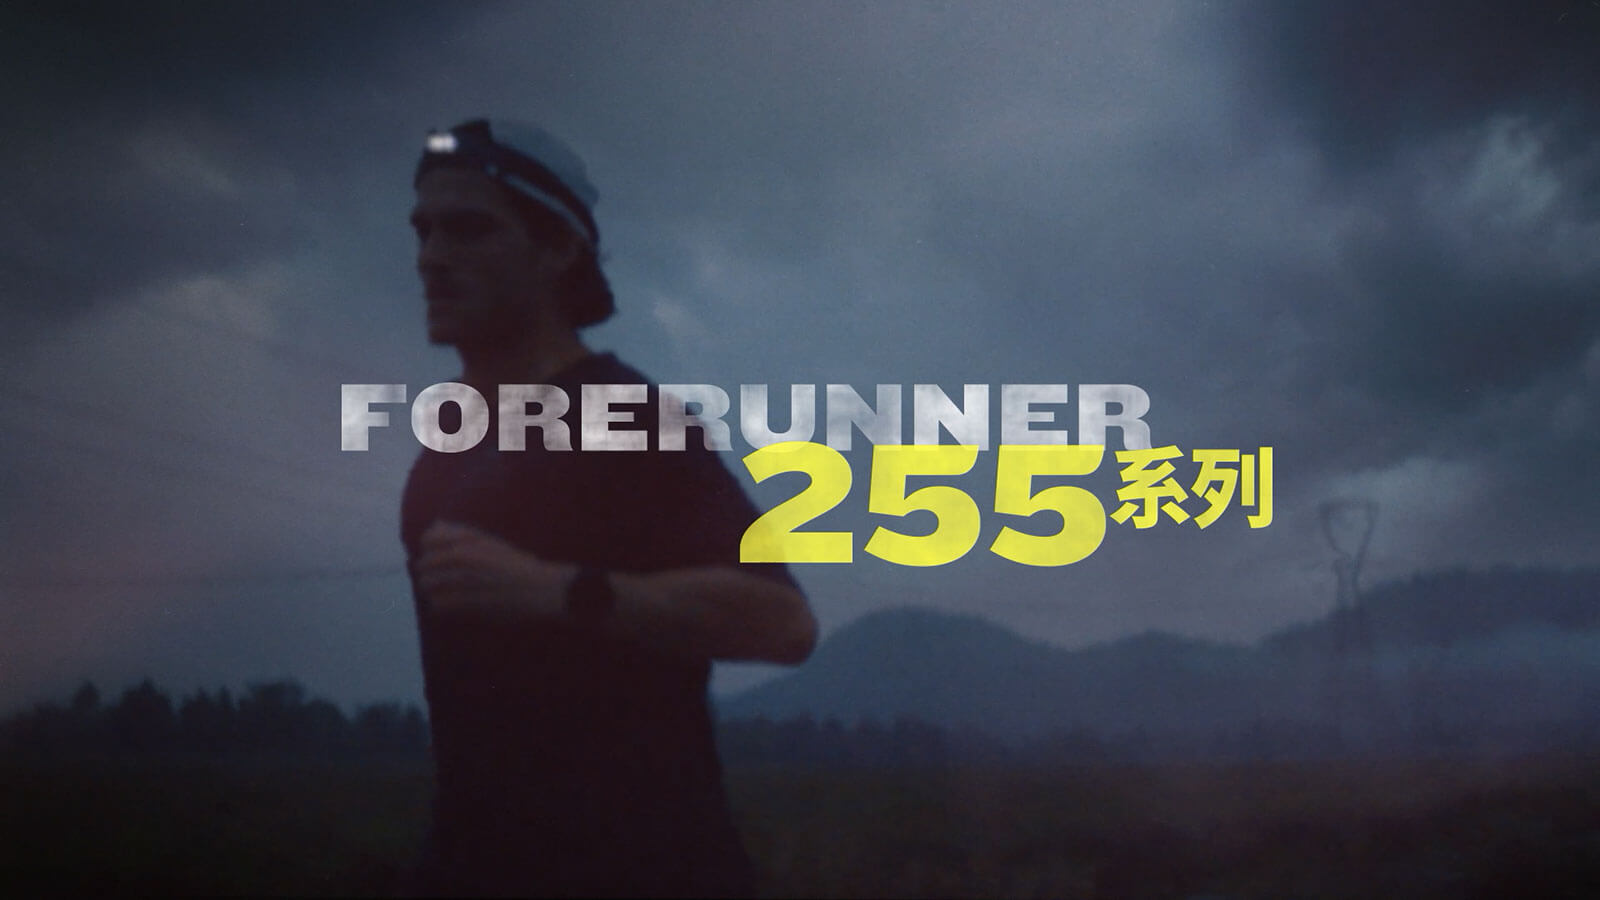 Forerunner 255 - 专业跑步运动手表